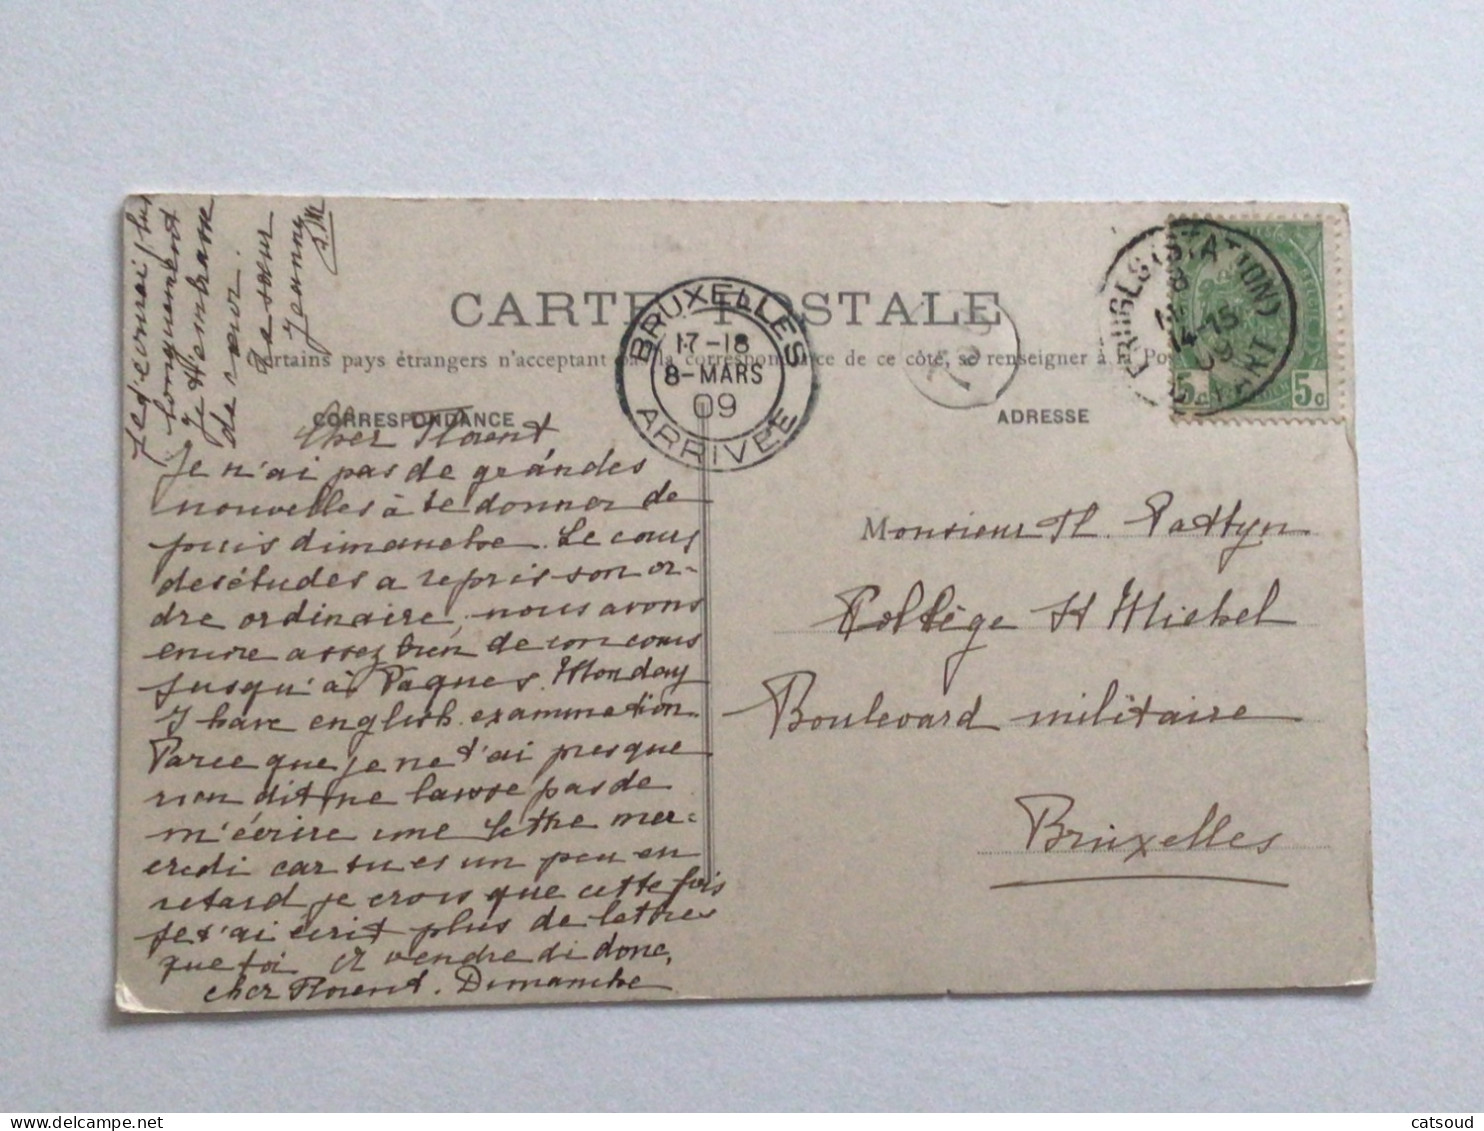 Carte Postale Ancienne (1909) Bethléem Champ De Booz - Les Bergers - Collection Mulsant Chevalier - Palästina